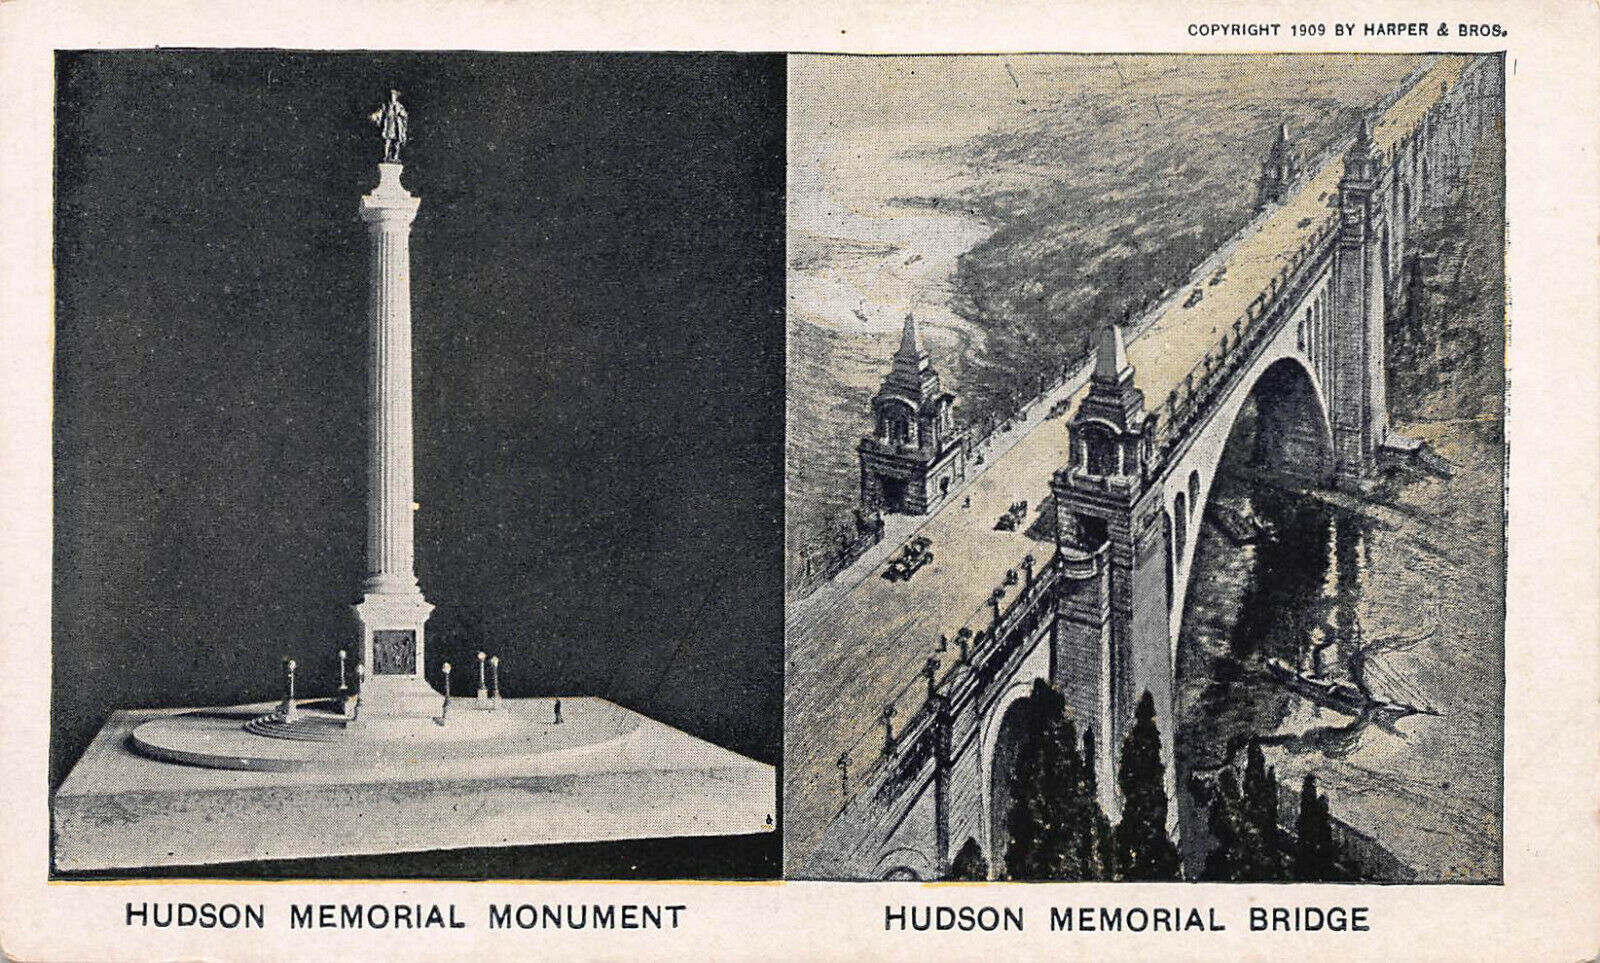 Hudson Memorial Monument and Hudson Memorial Bridge, N.Y.C., 1909 Postcard